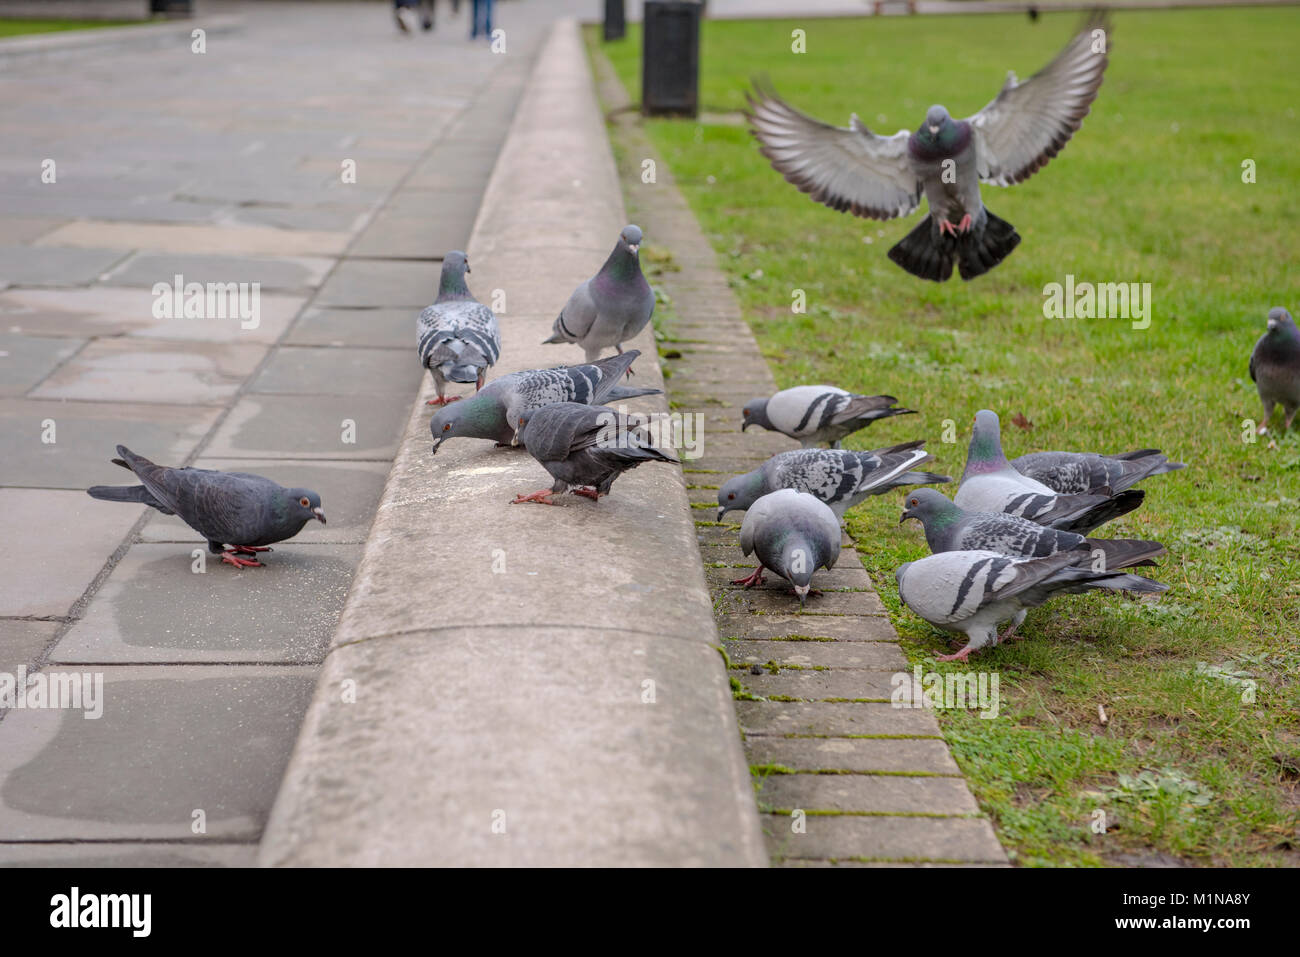 Un groupe de pigeons et de manger un pigeon en vol, sur à la terre Banque D'Images